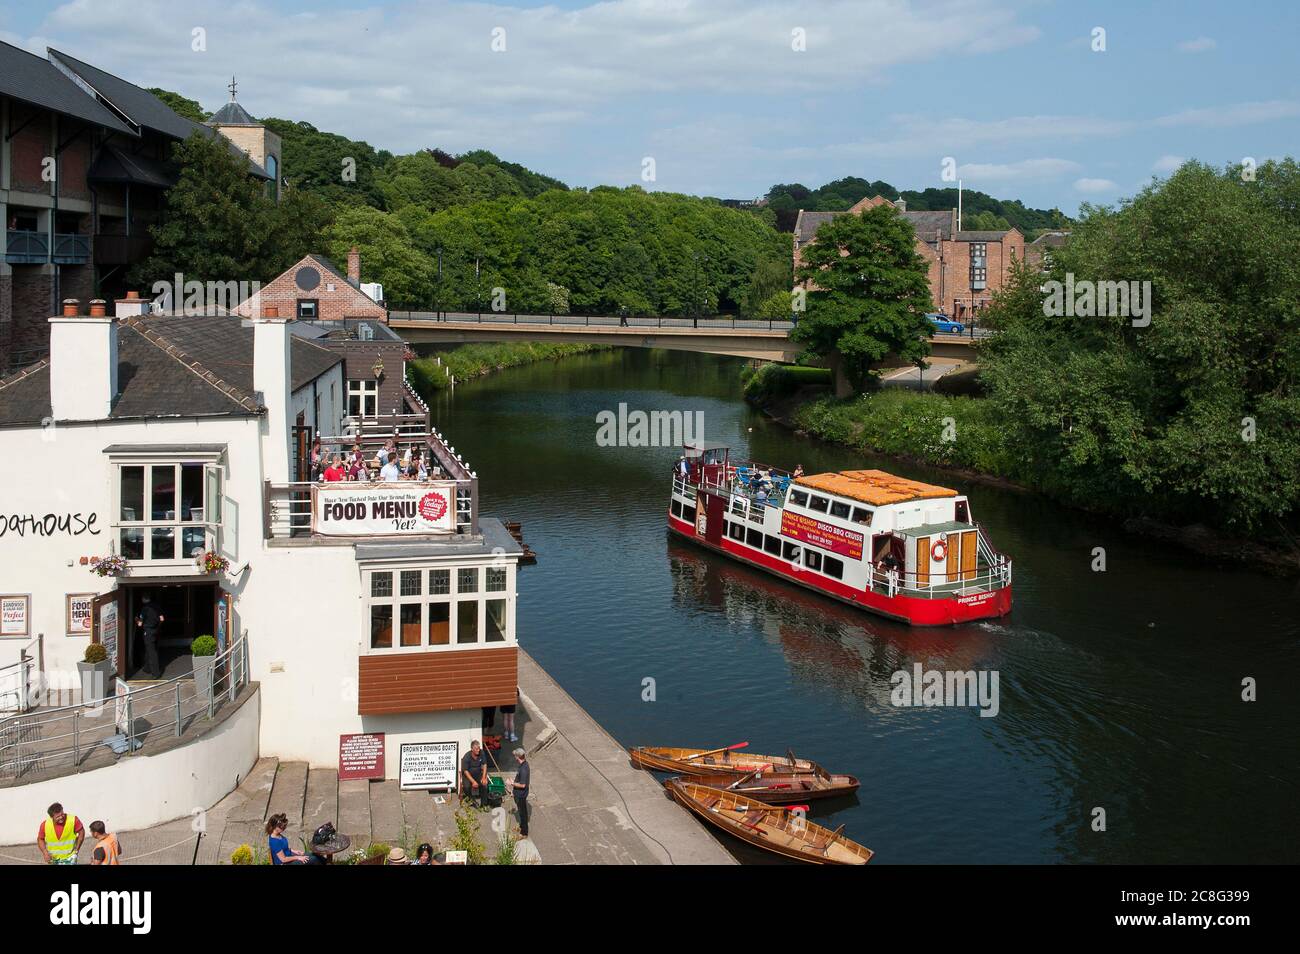 Promenade en bateau à River le pub Boathouse sur les rives de la rivière Wear dans la ville catherdrique de Durham, comté de Durham, Angleterre. Banque D'Images